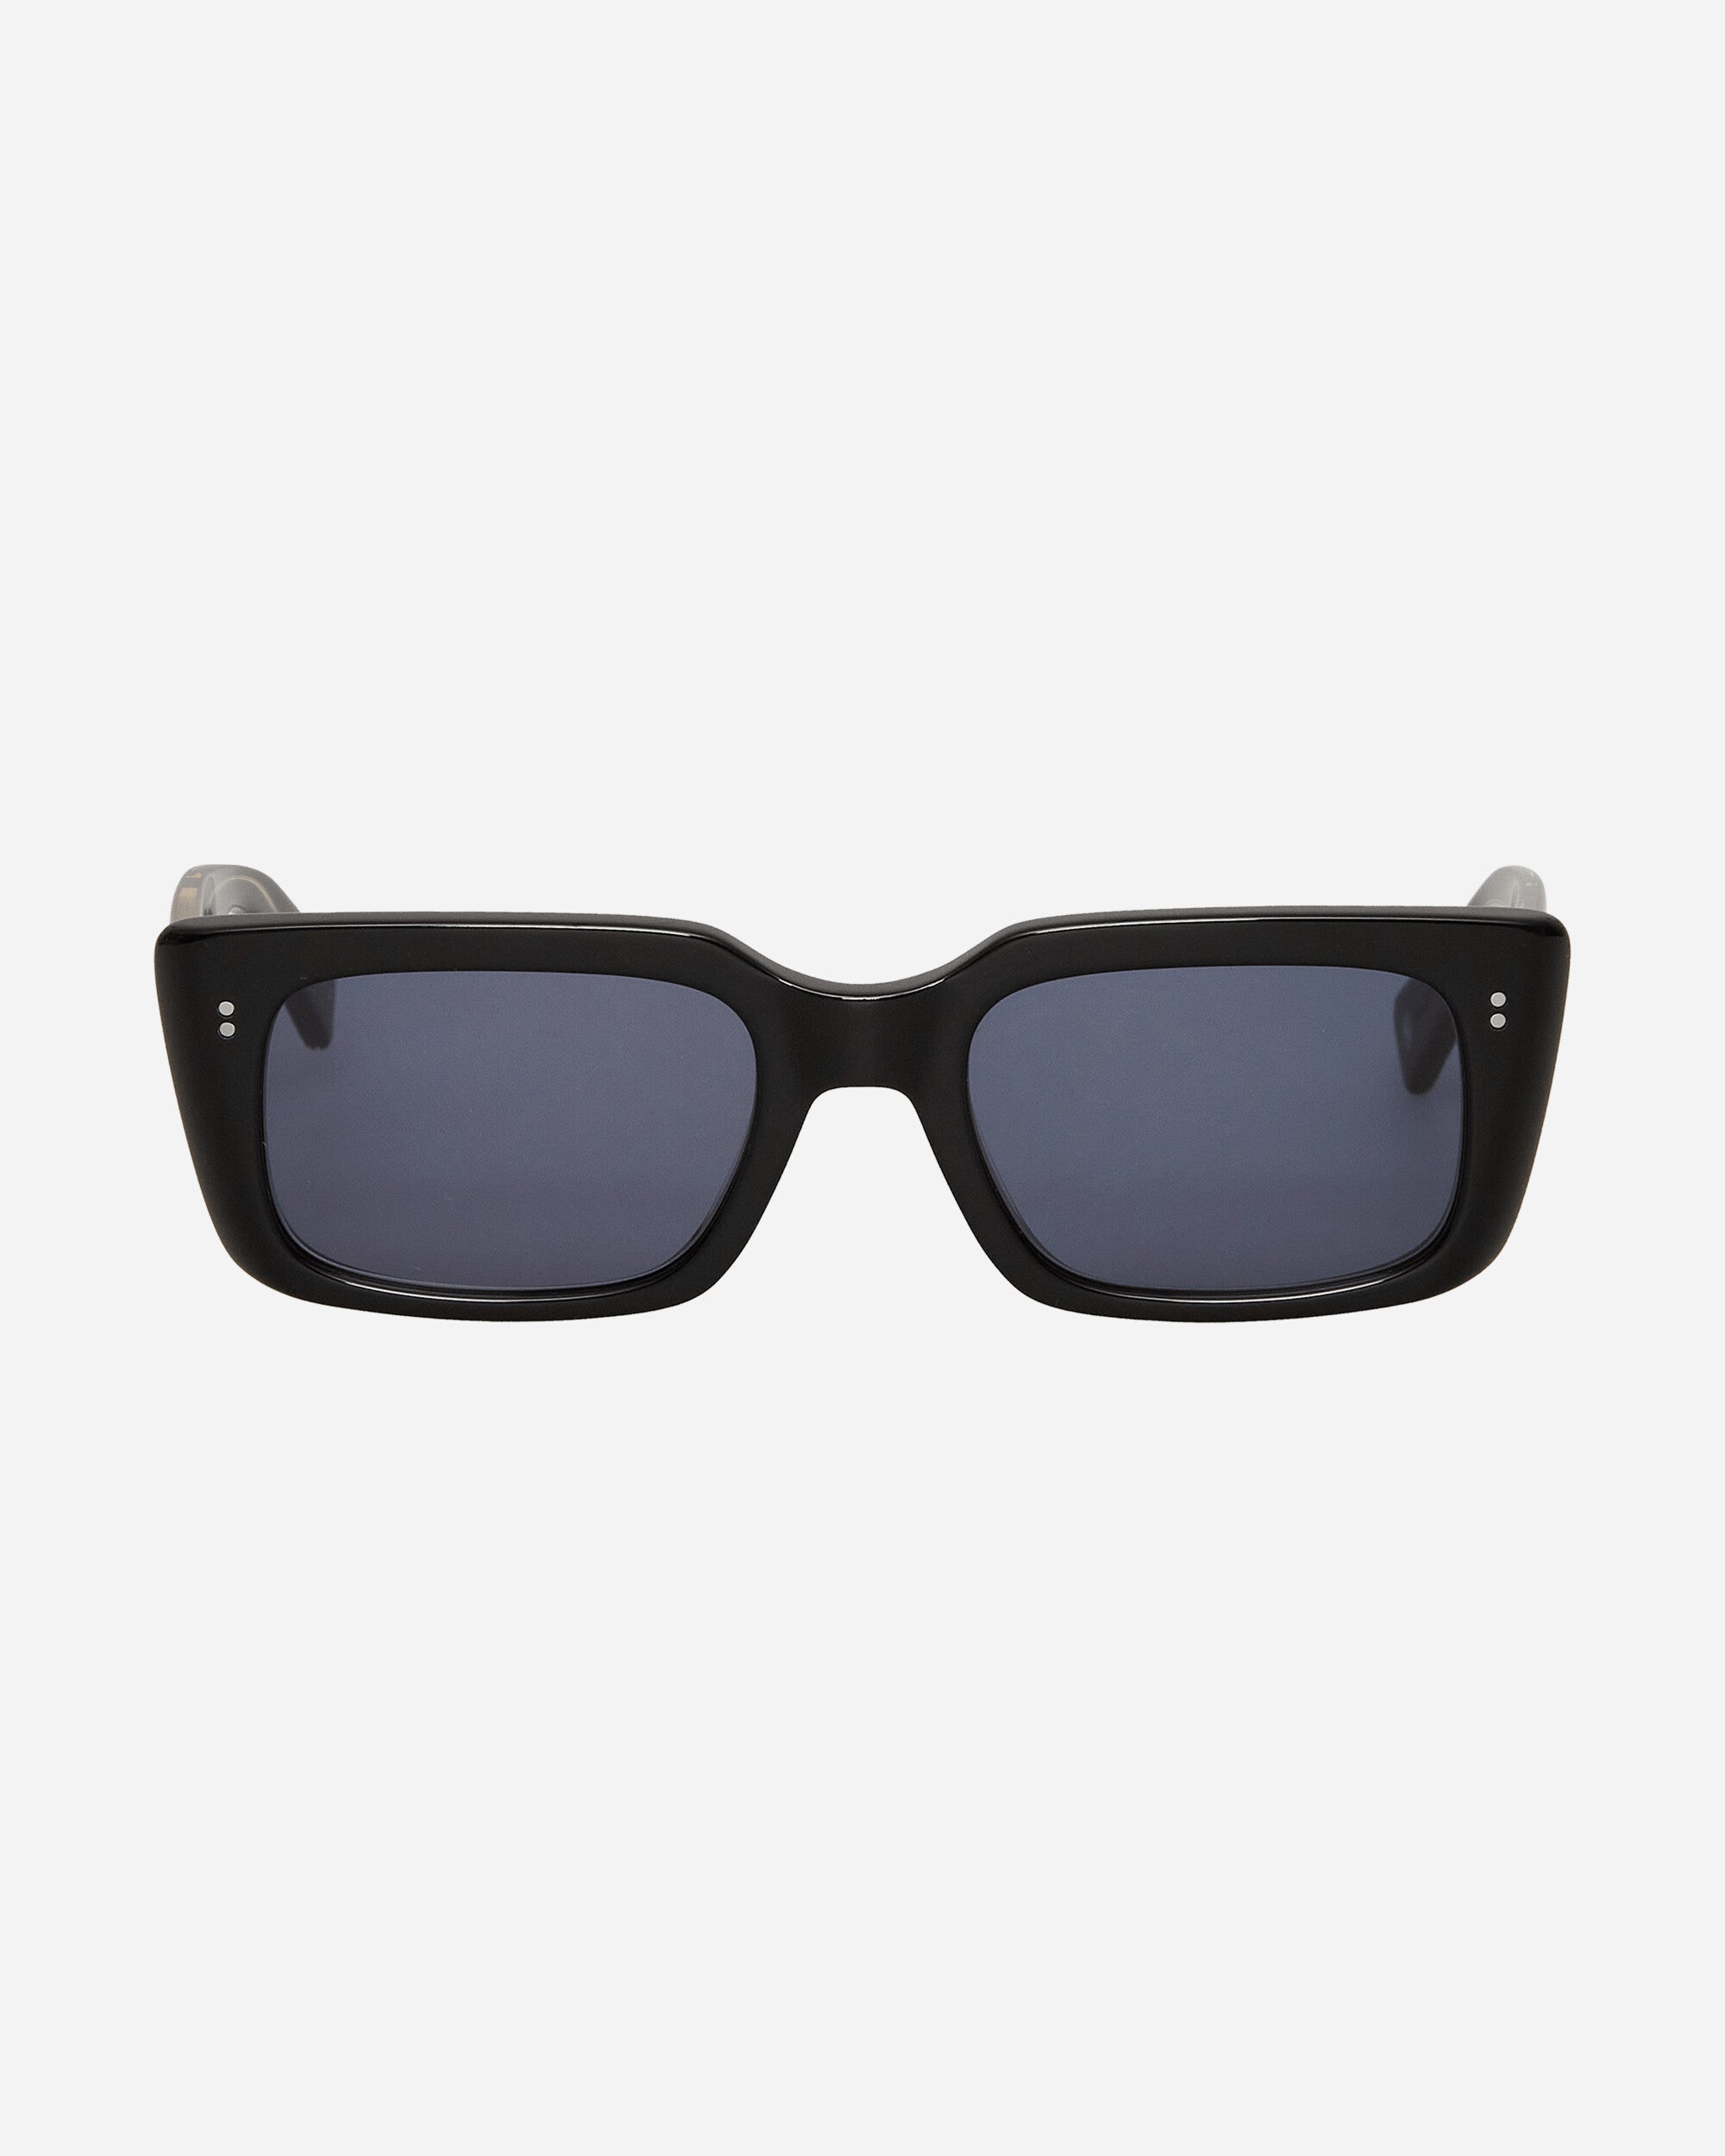 Garrett Leight Gl 3030 49 Black/Semi-Flat Navy Eyewear Glasses 2126-49 BKSFNVY